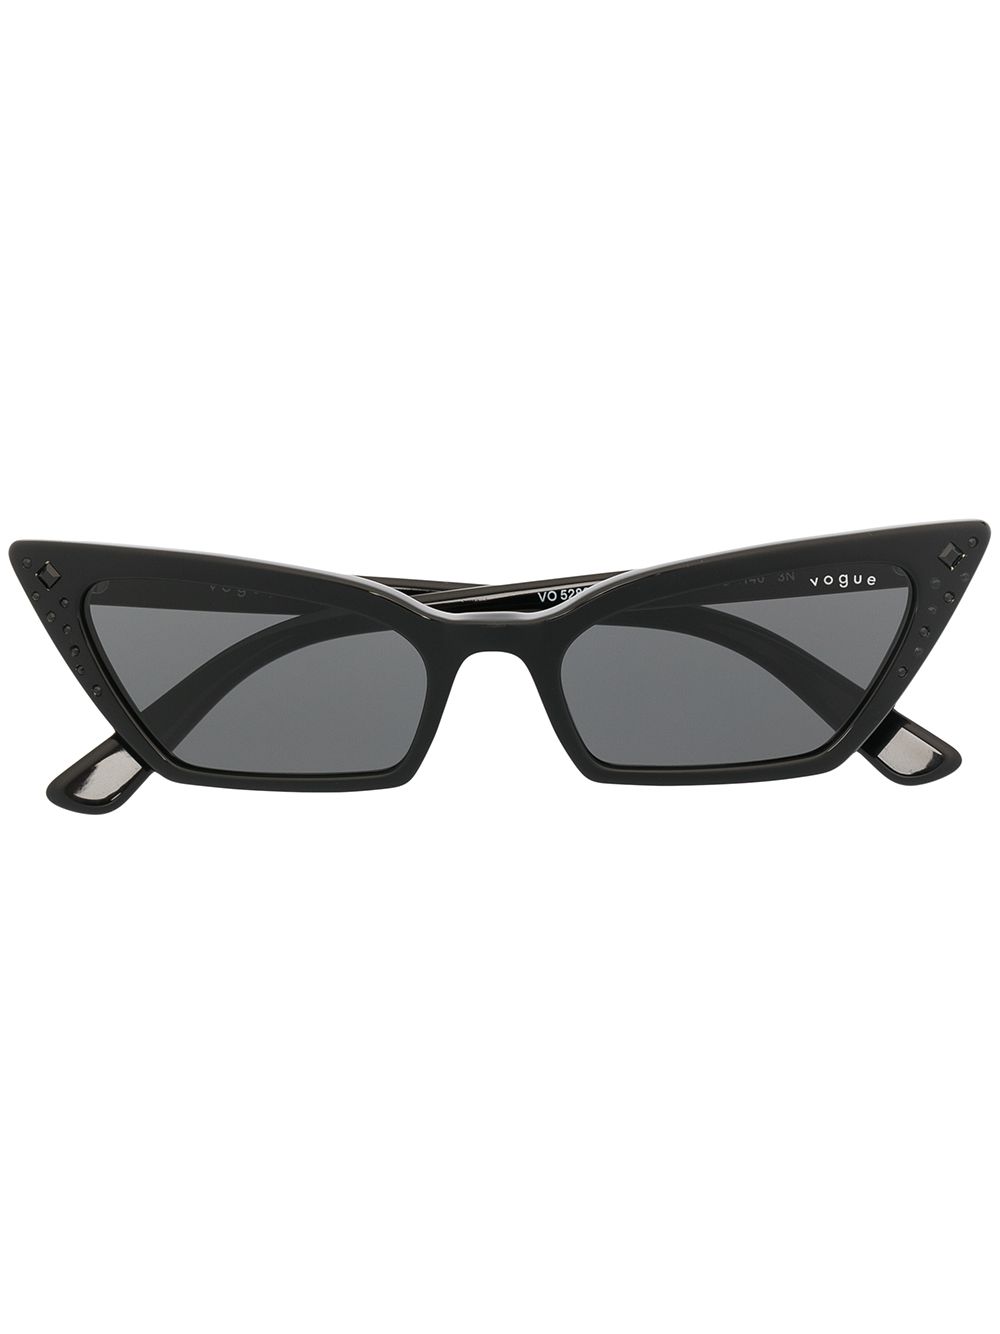 фото Vogue eyewear солнцезащитные очки в оправе 'кошачий глаз'